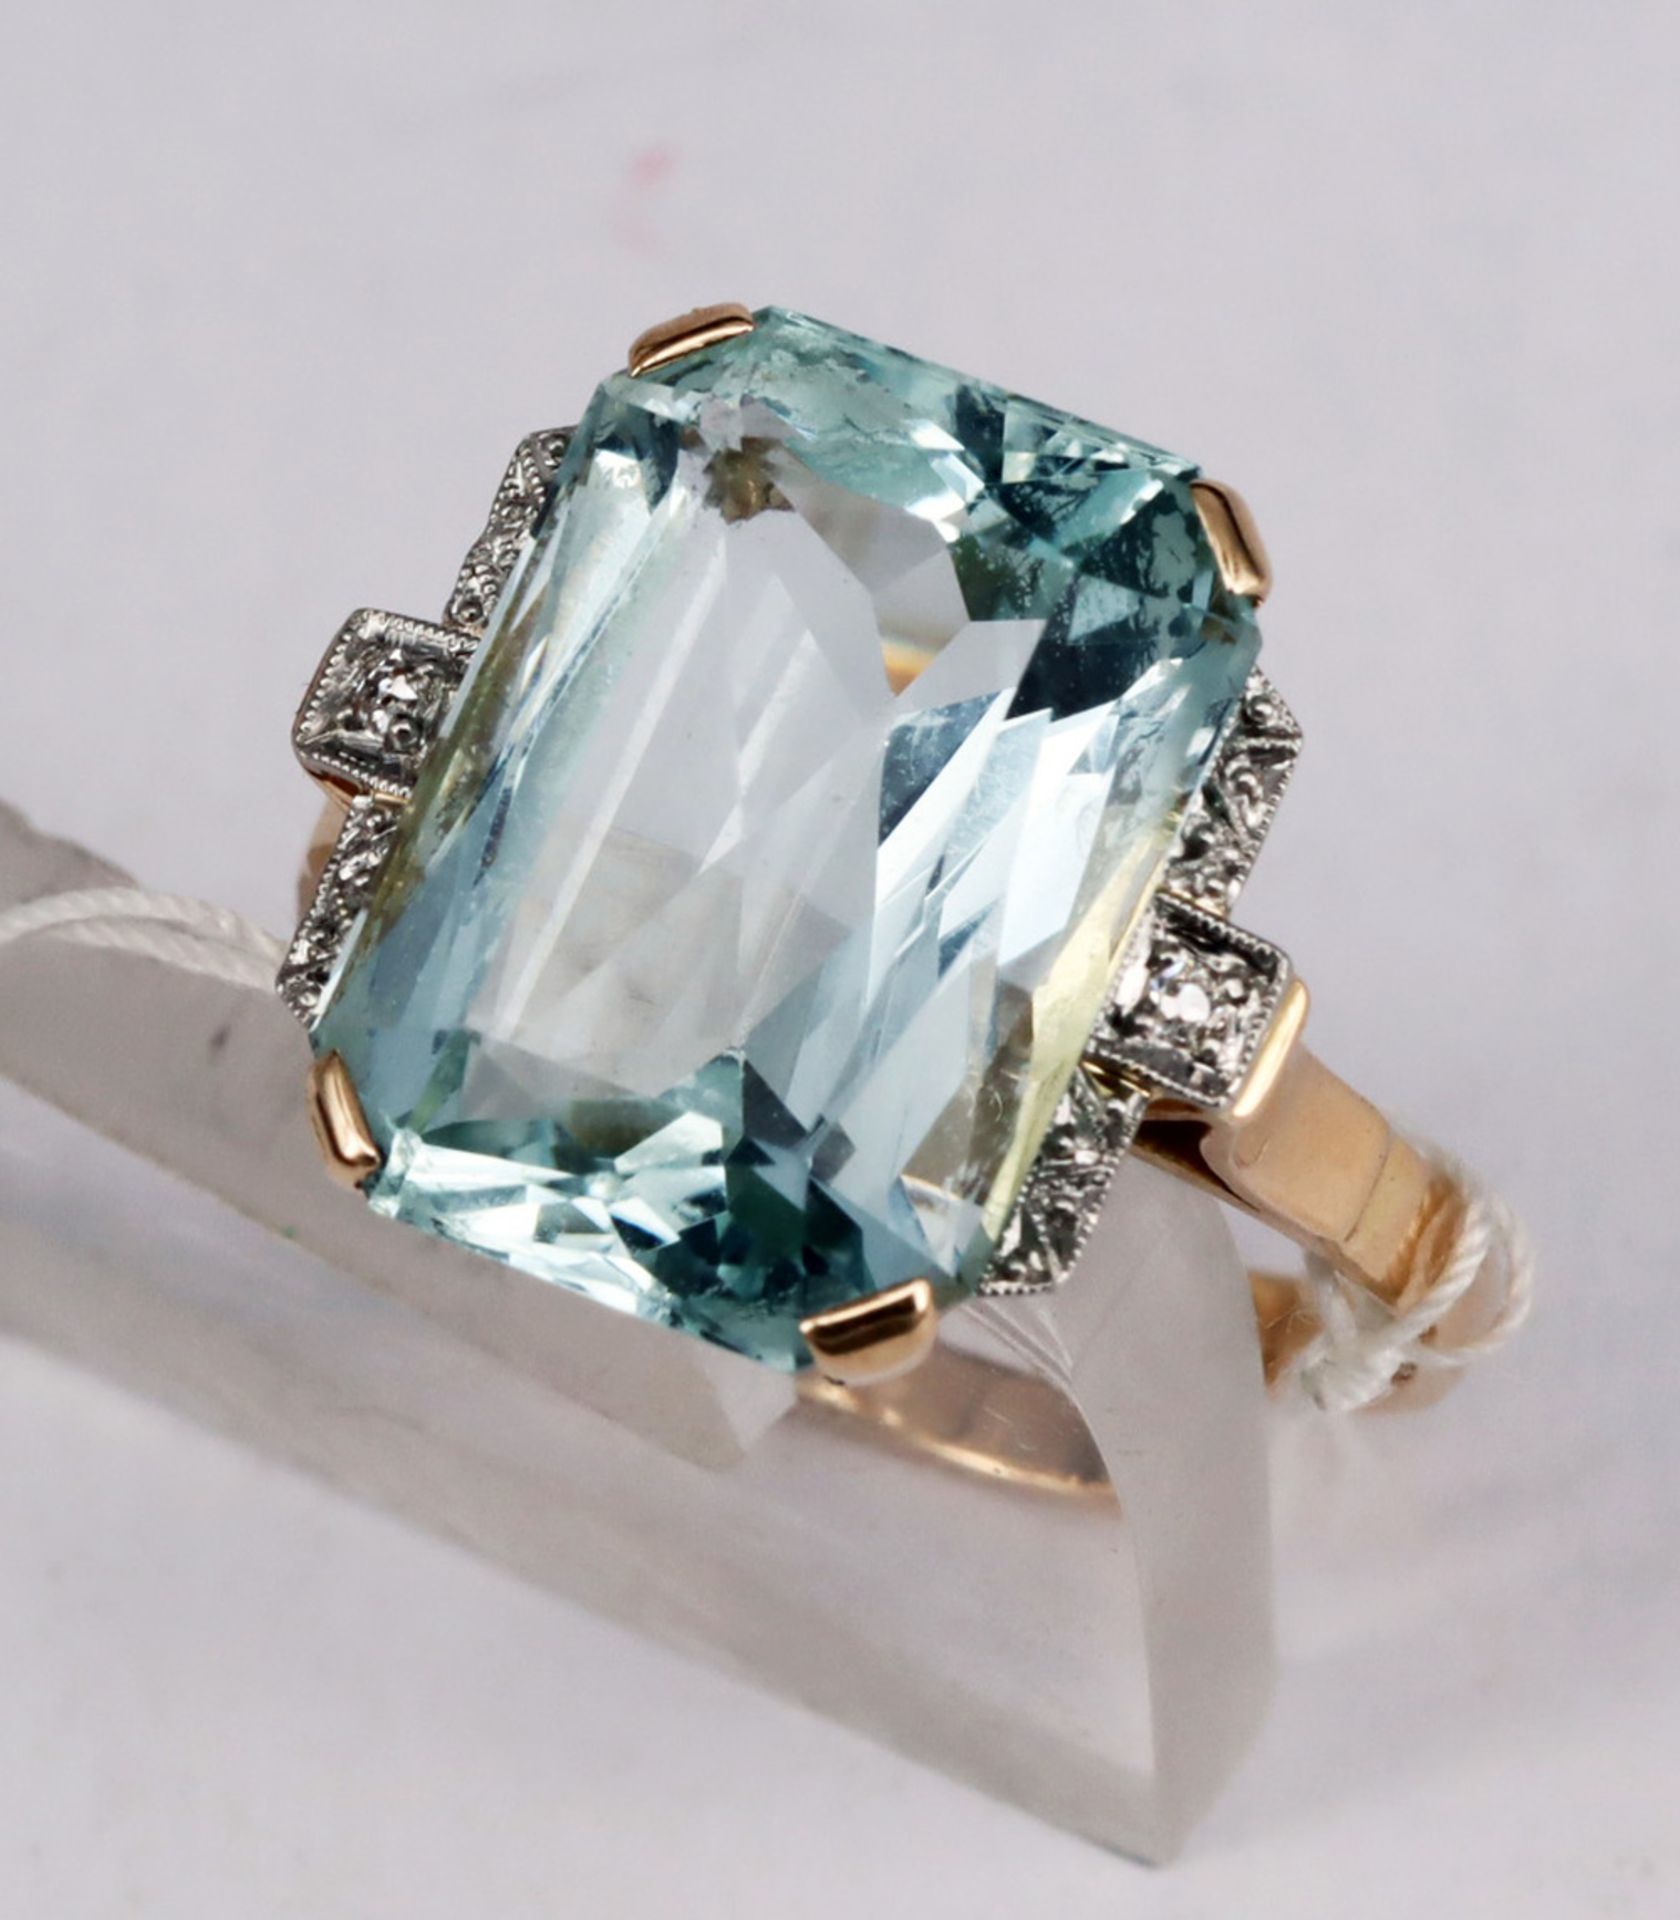 Ring, 585er GG, mit großem Aquamarin ca. 9 ct, seitlich mit Diamanten gefasst, Altersspuren, RG56 - Image 2 of 5